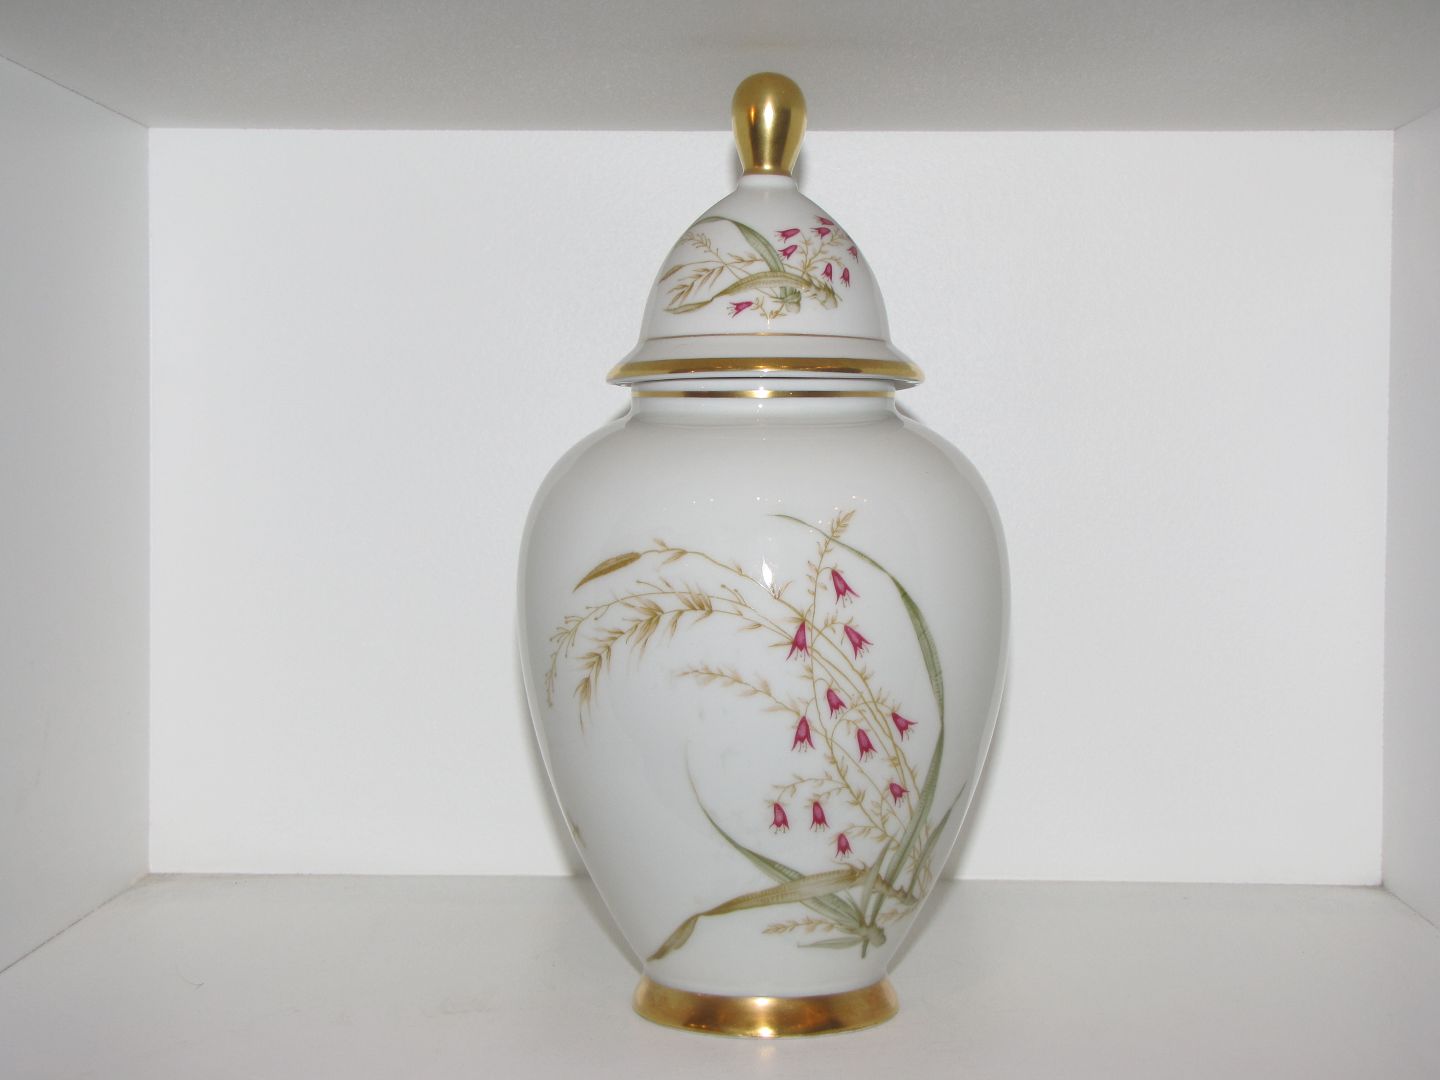 Bavaria Porcelain Jar with a Lid